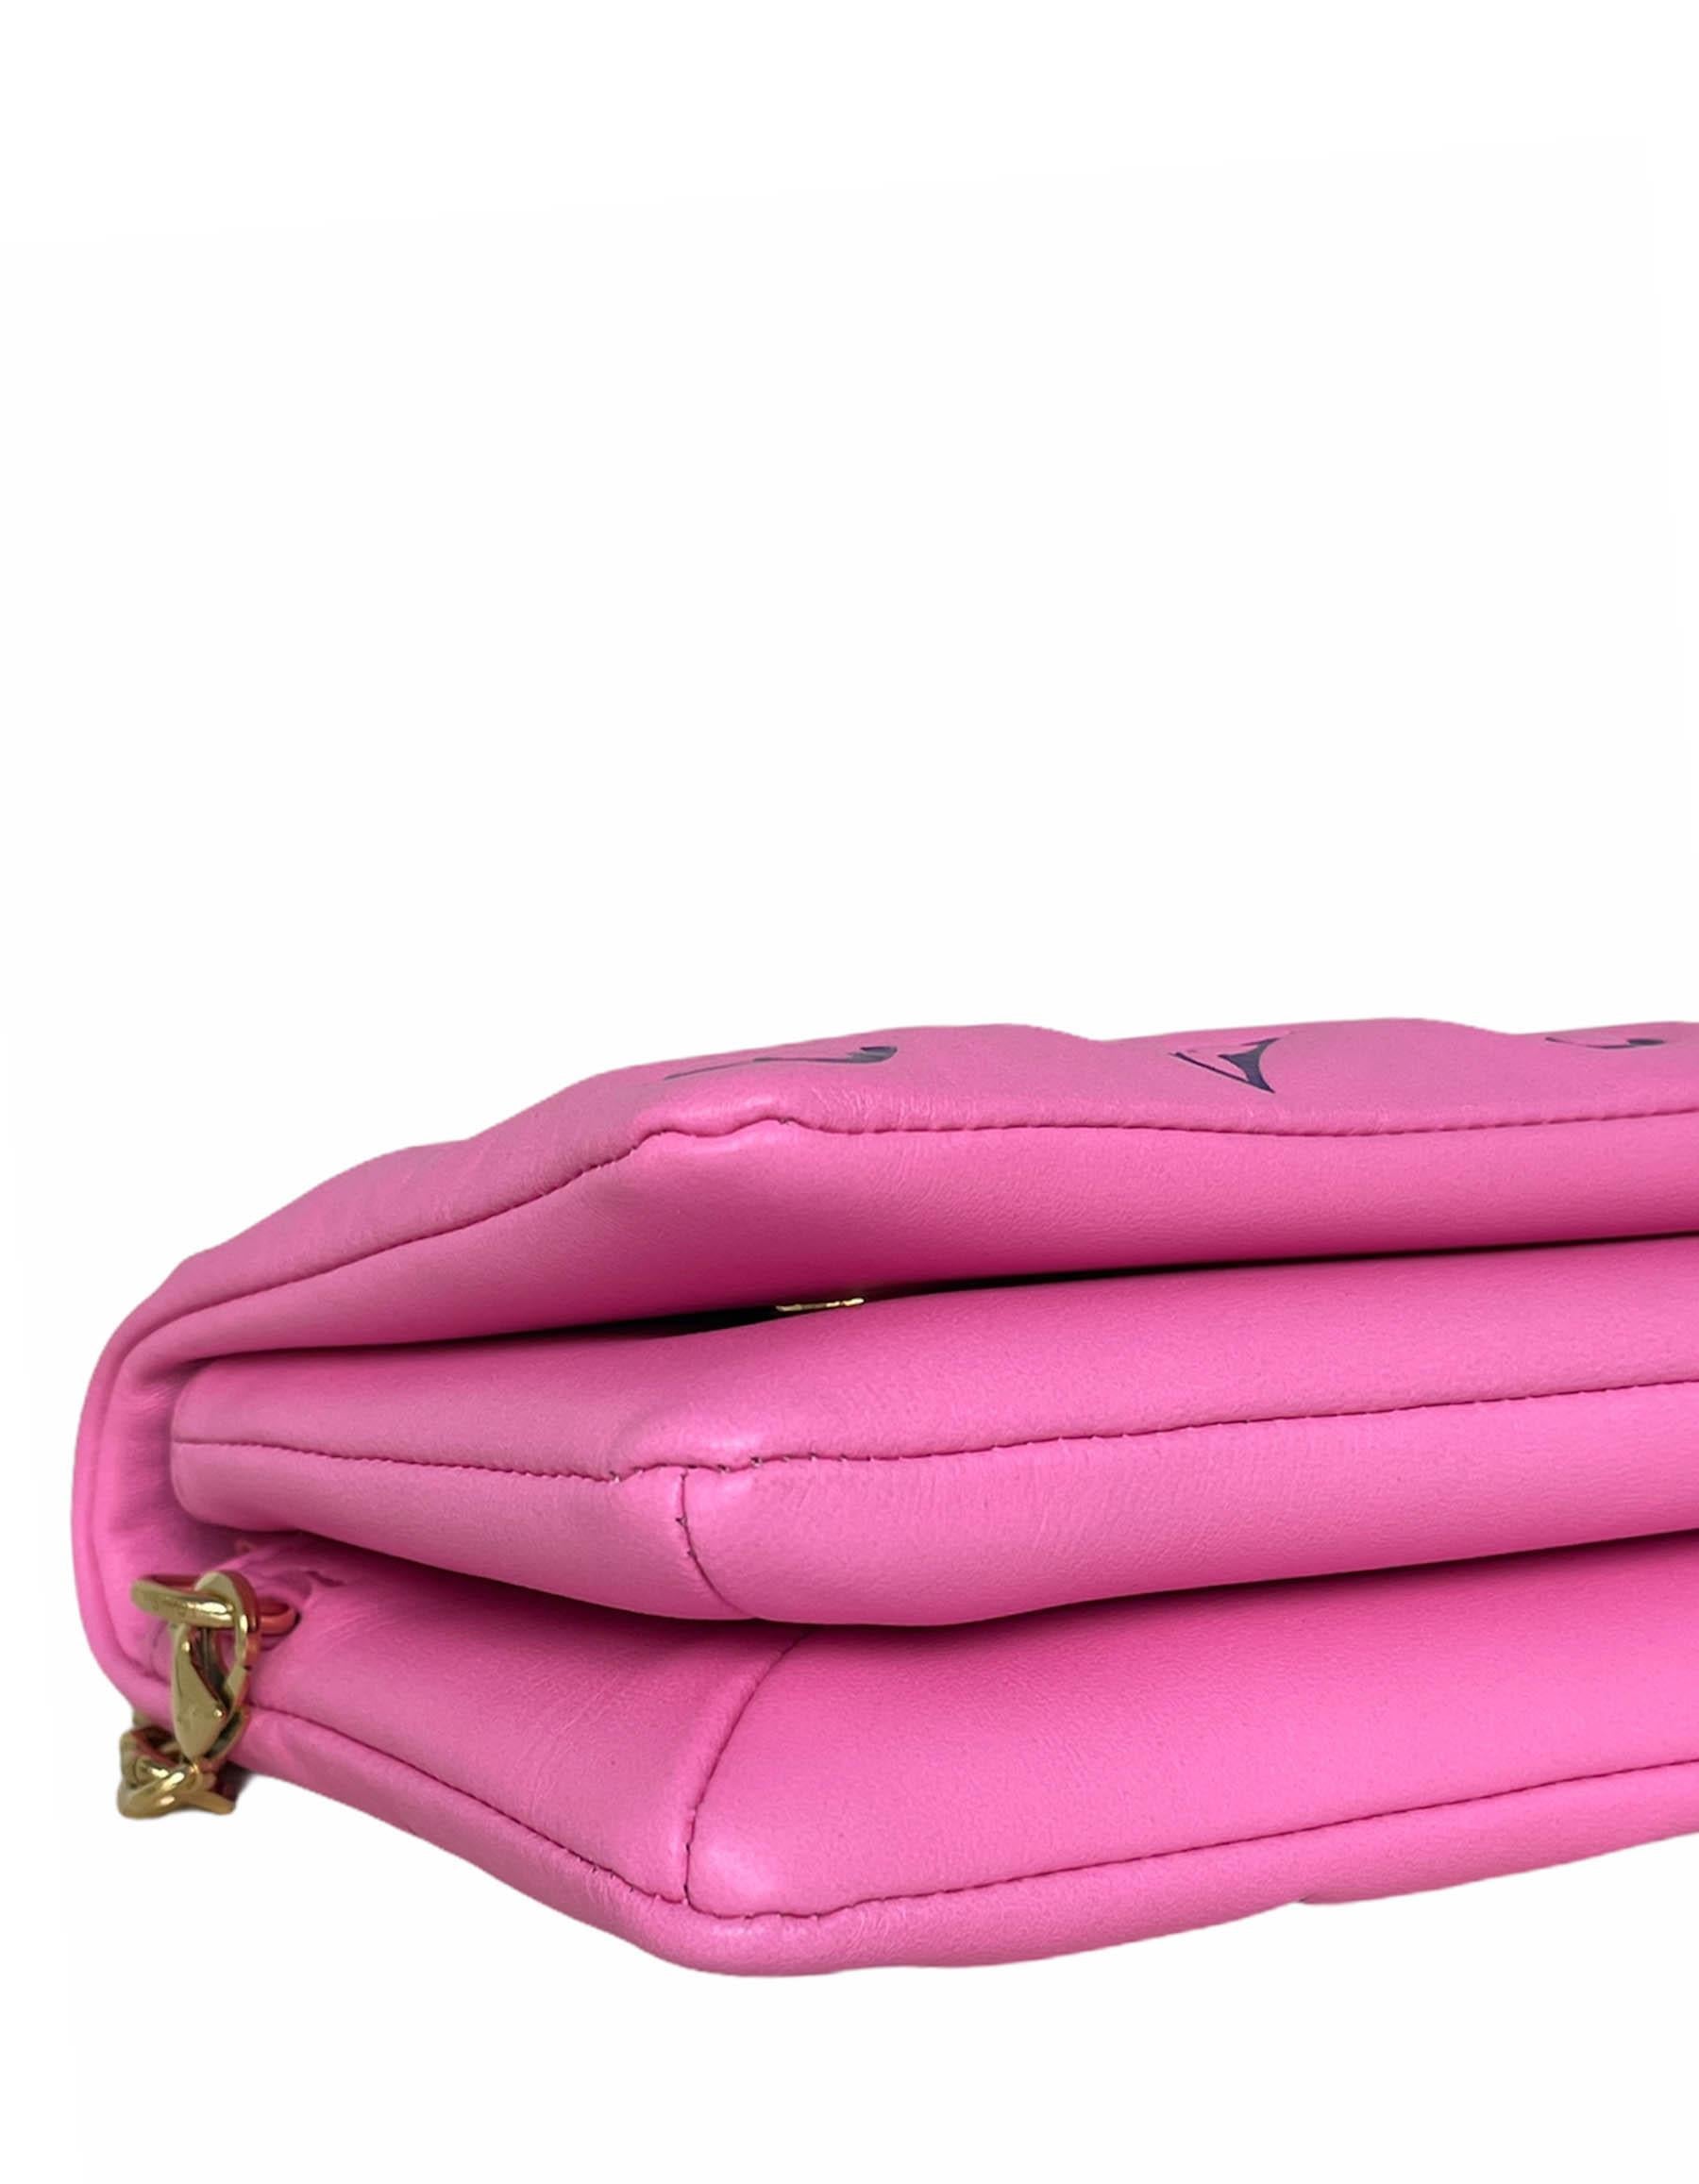 pink and purple lv bag